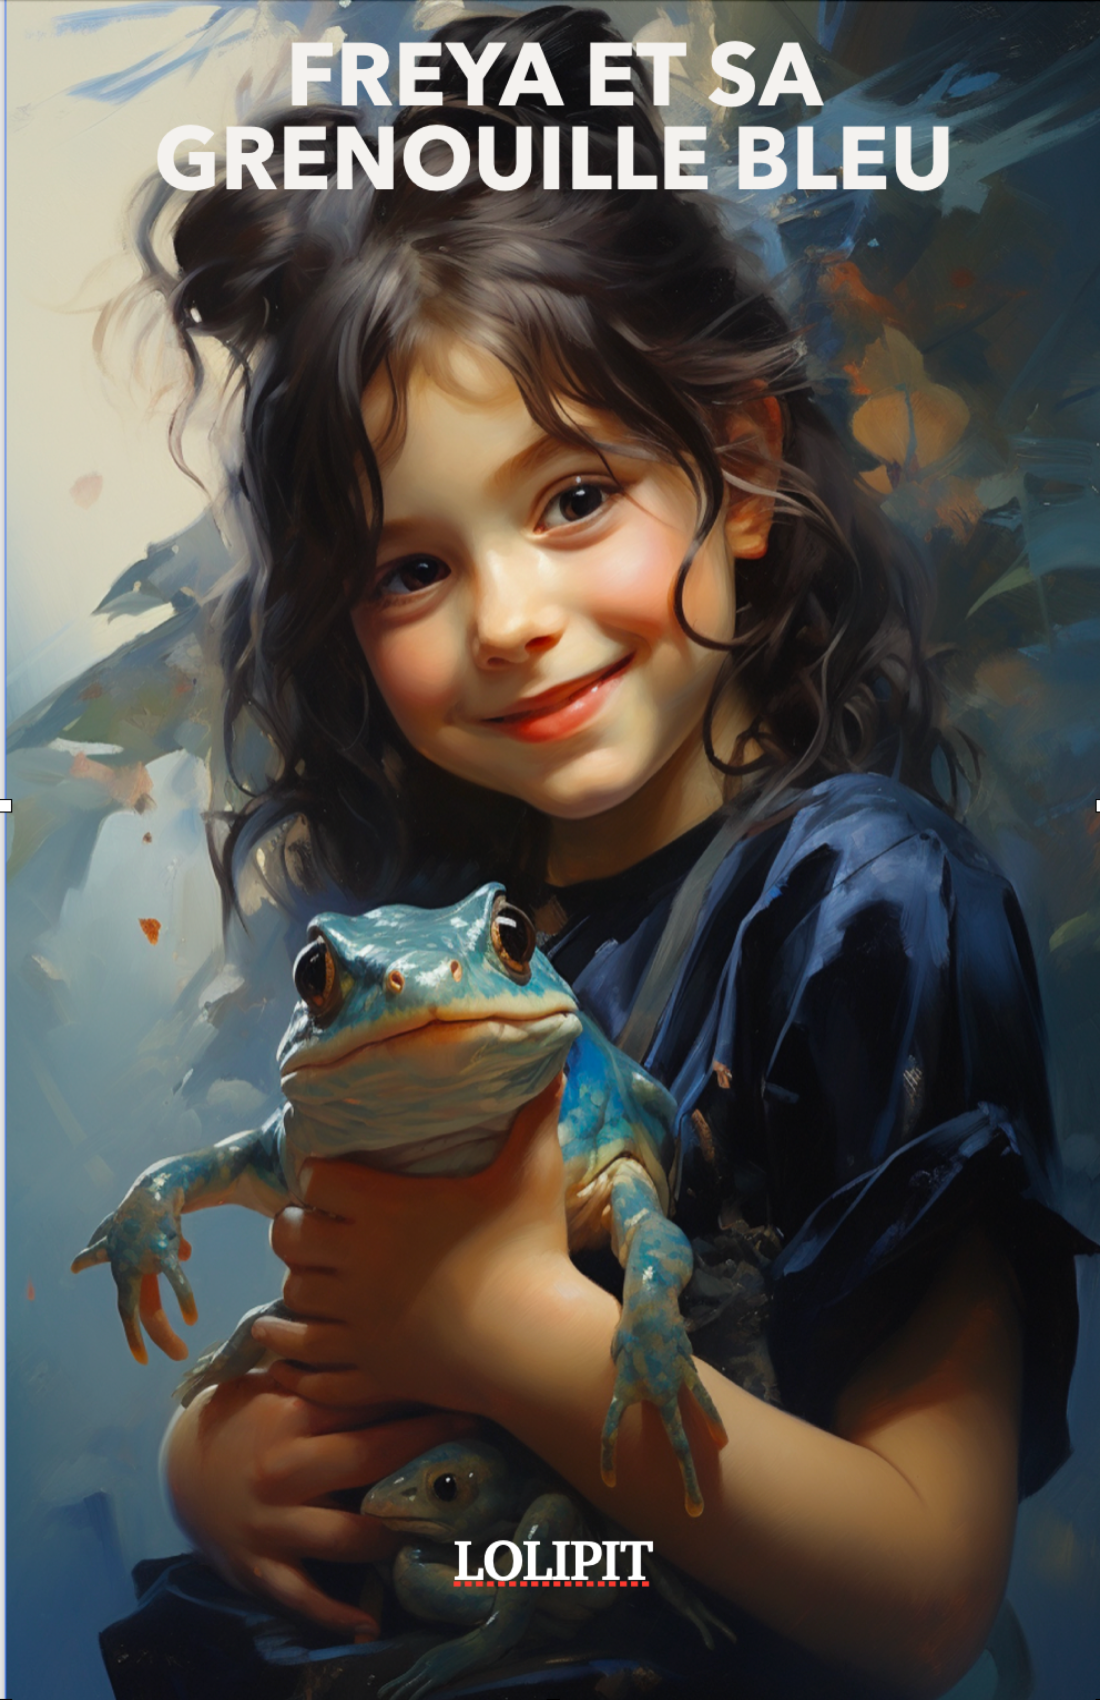 Freya et sa grenouille bleu